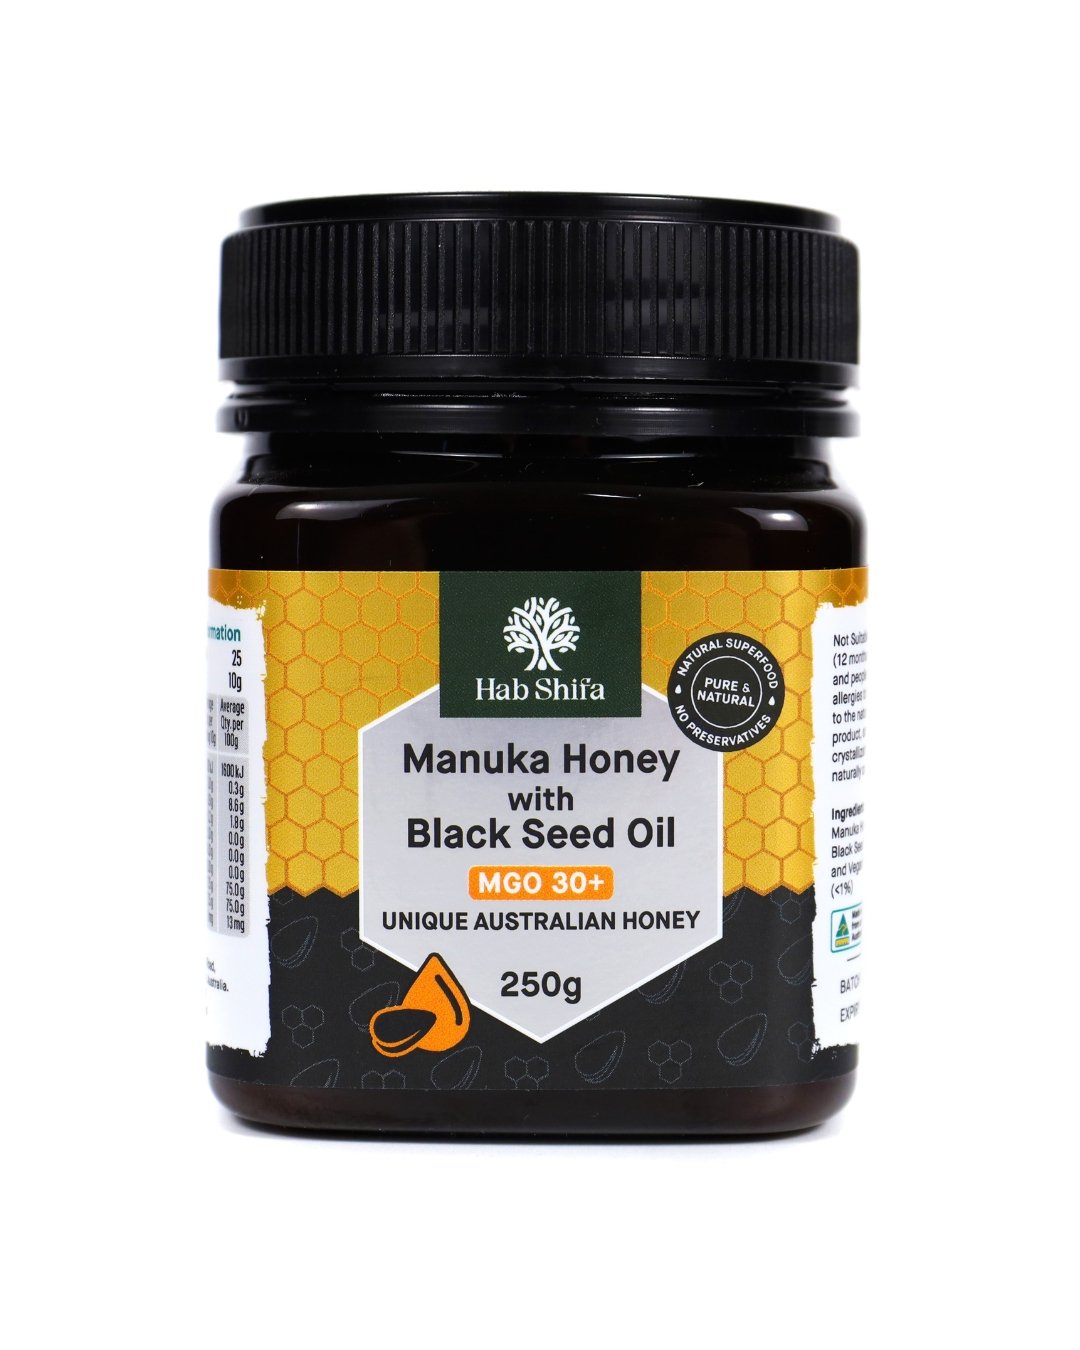 Manuka Honey (MGO 30+) with Black Seed Oil 250g - Hab Shifa